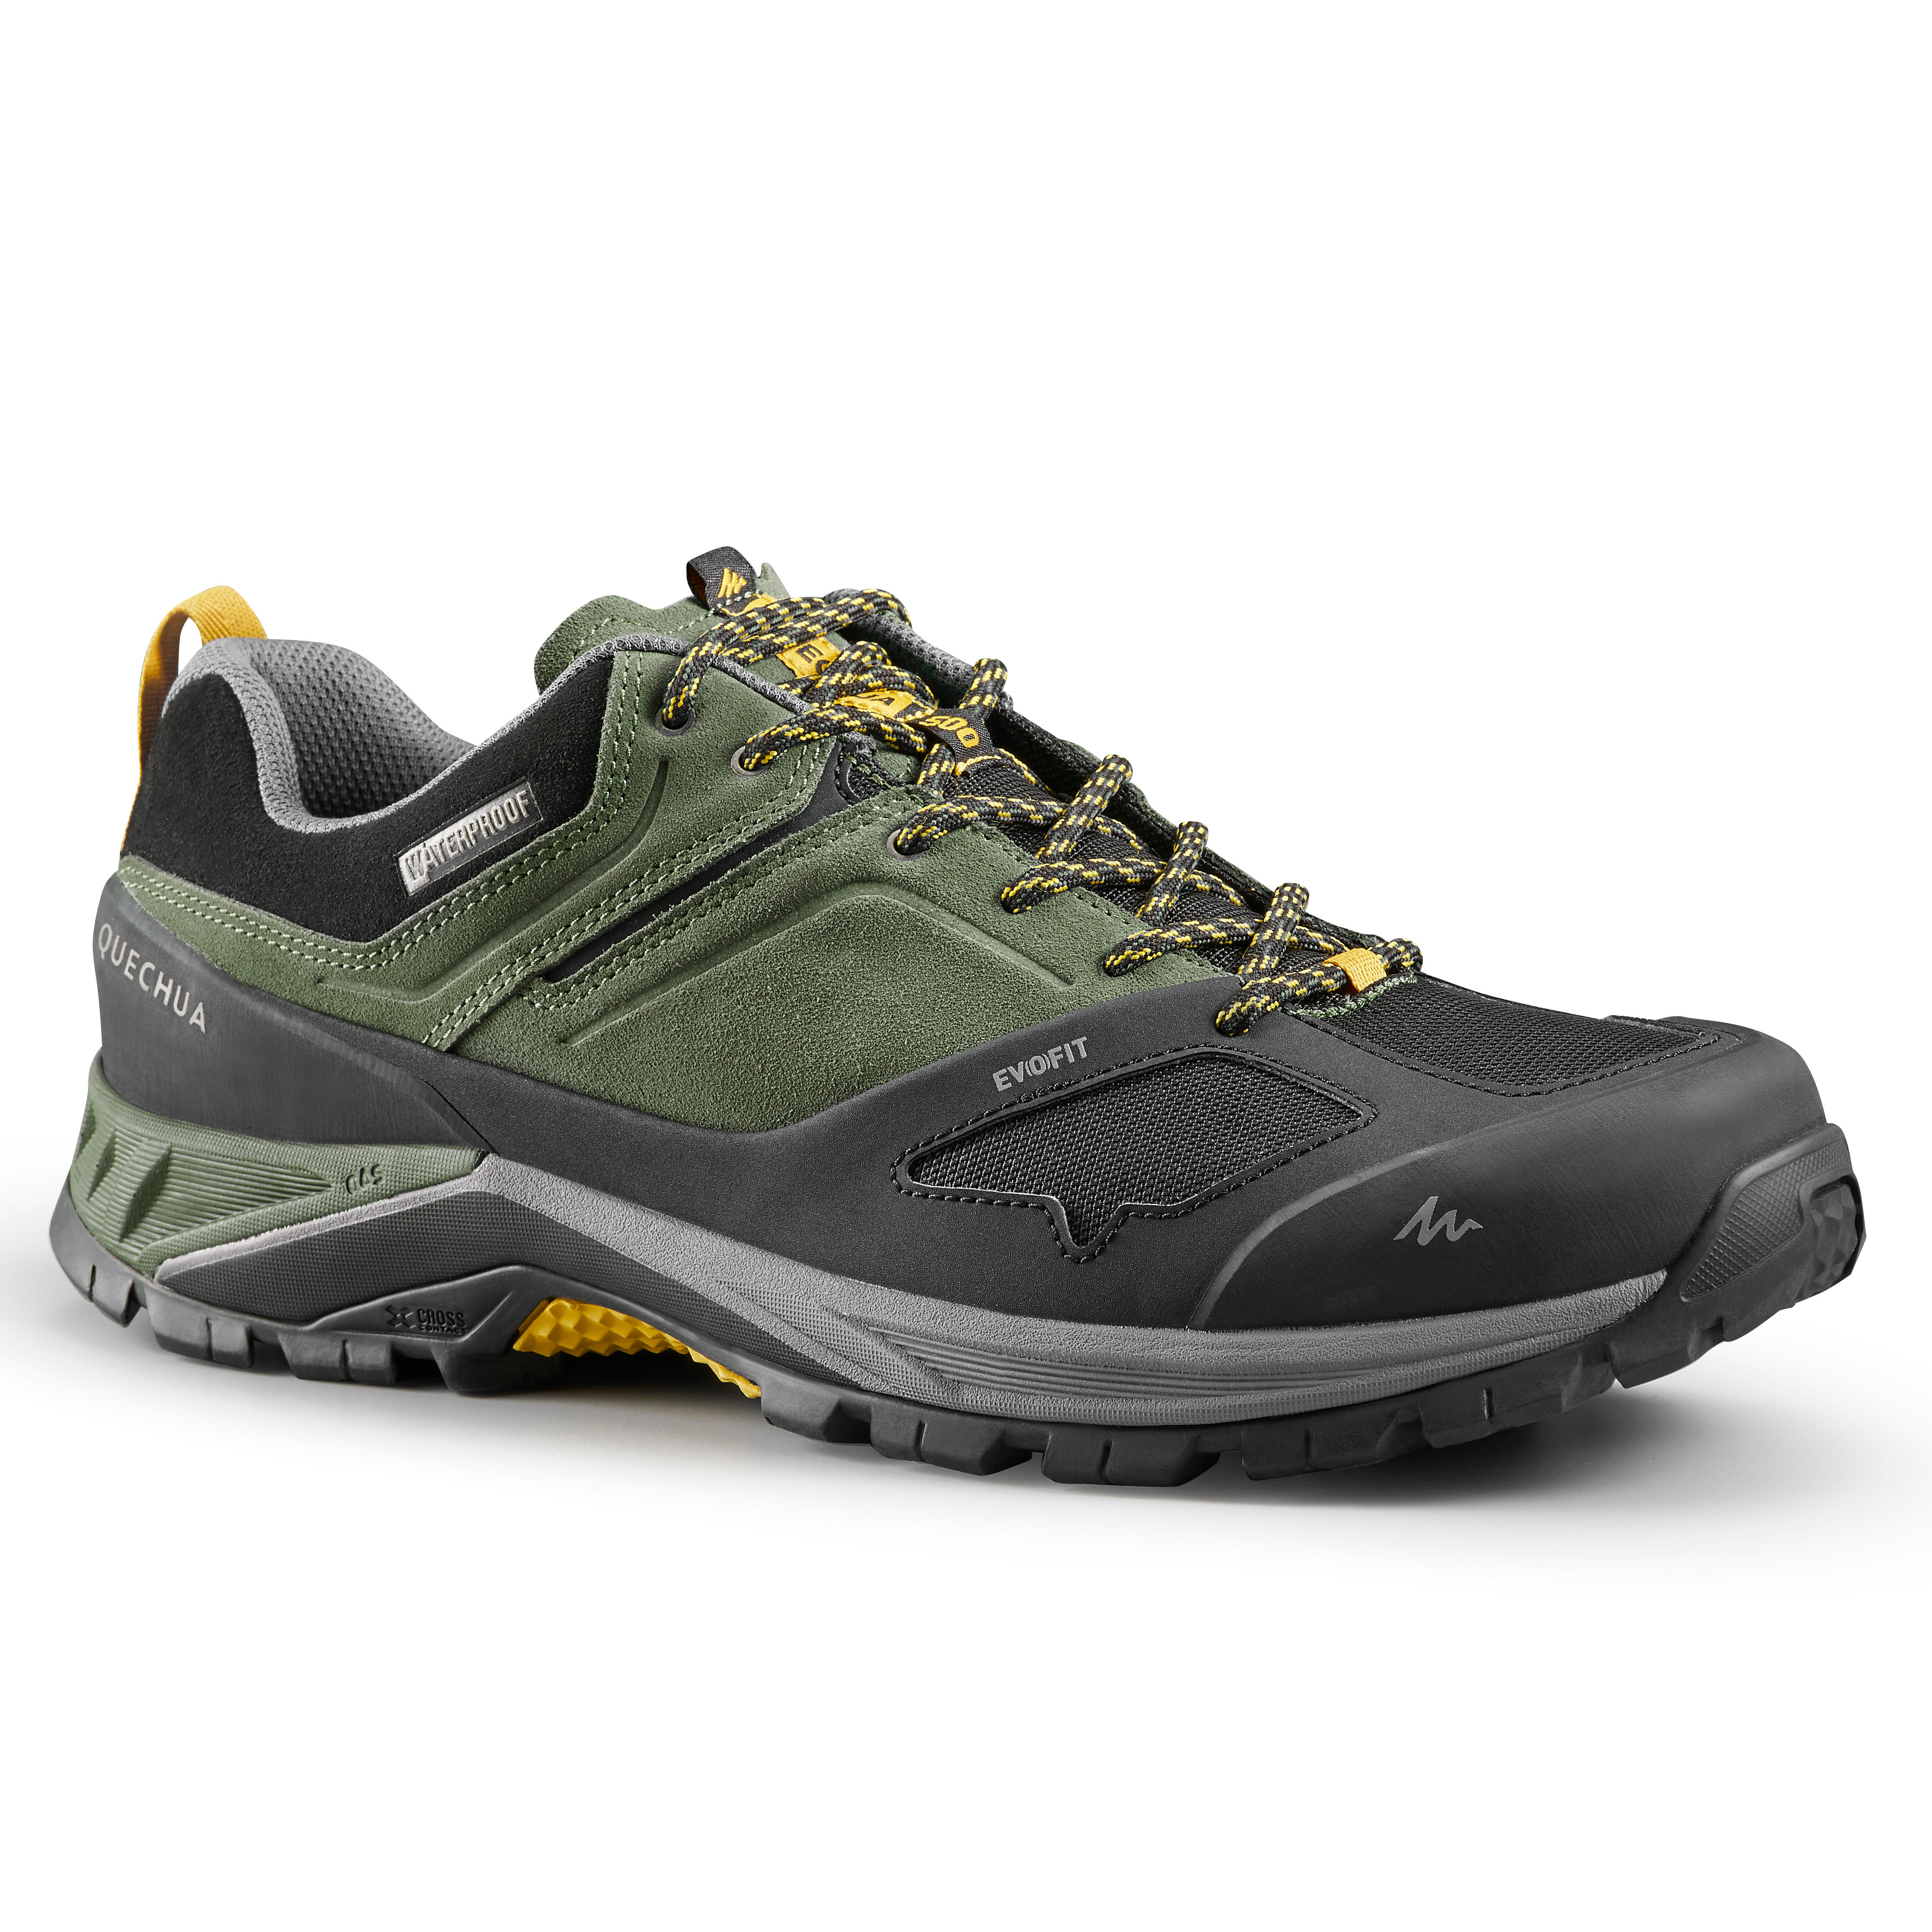 Men's waterproof mountain hiking shoes 